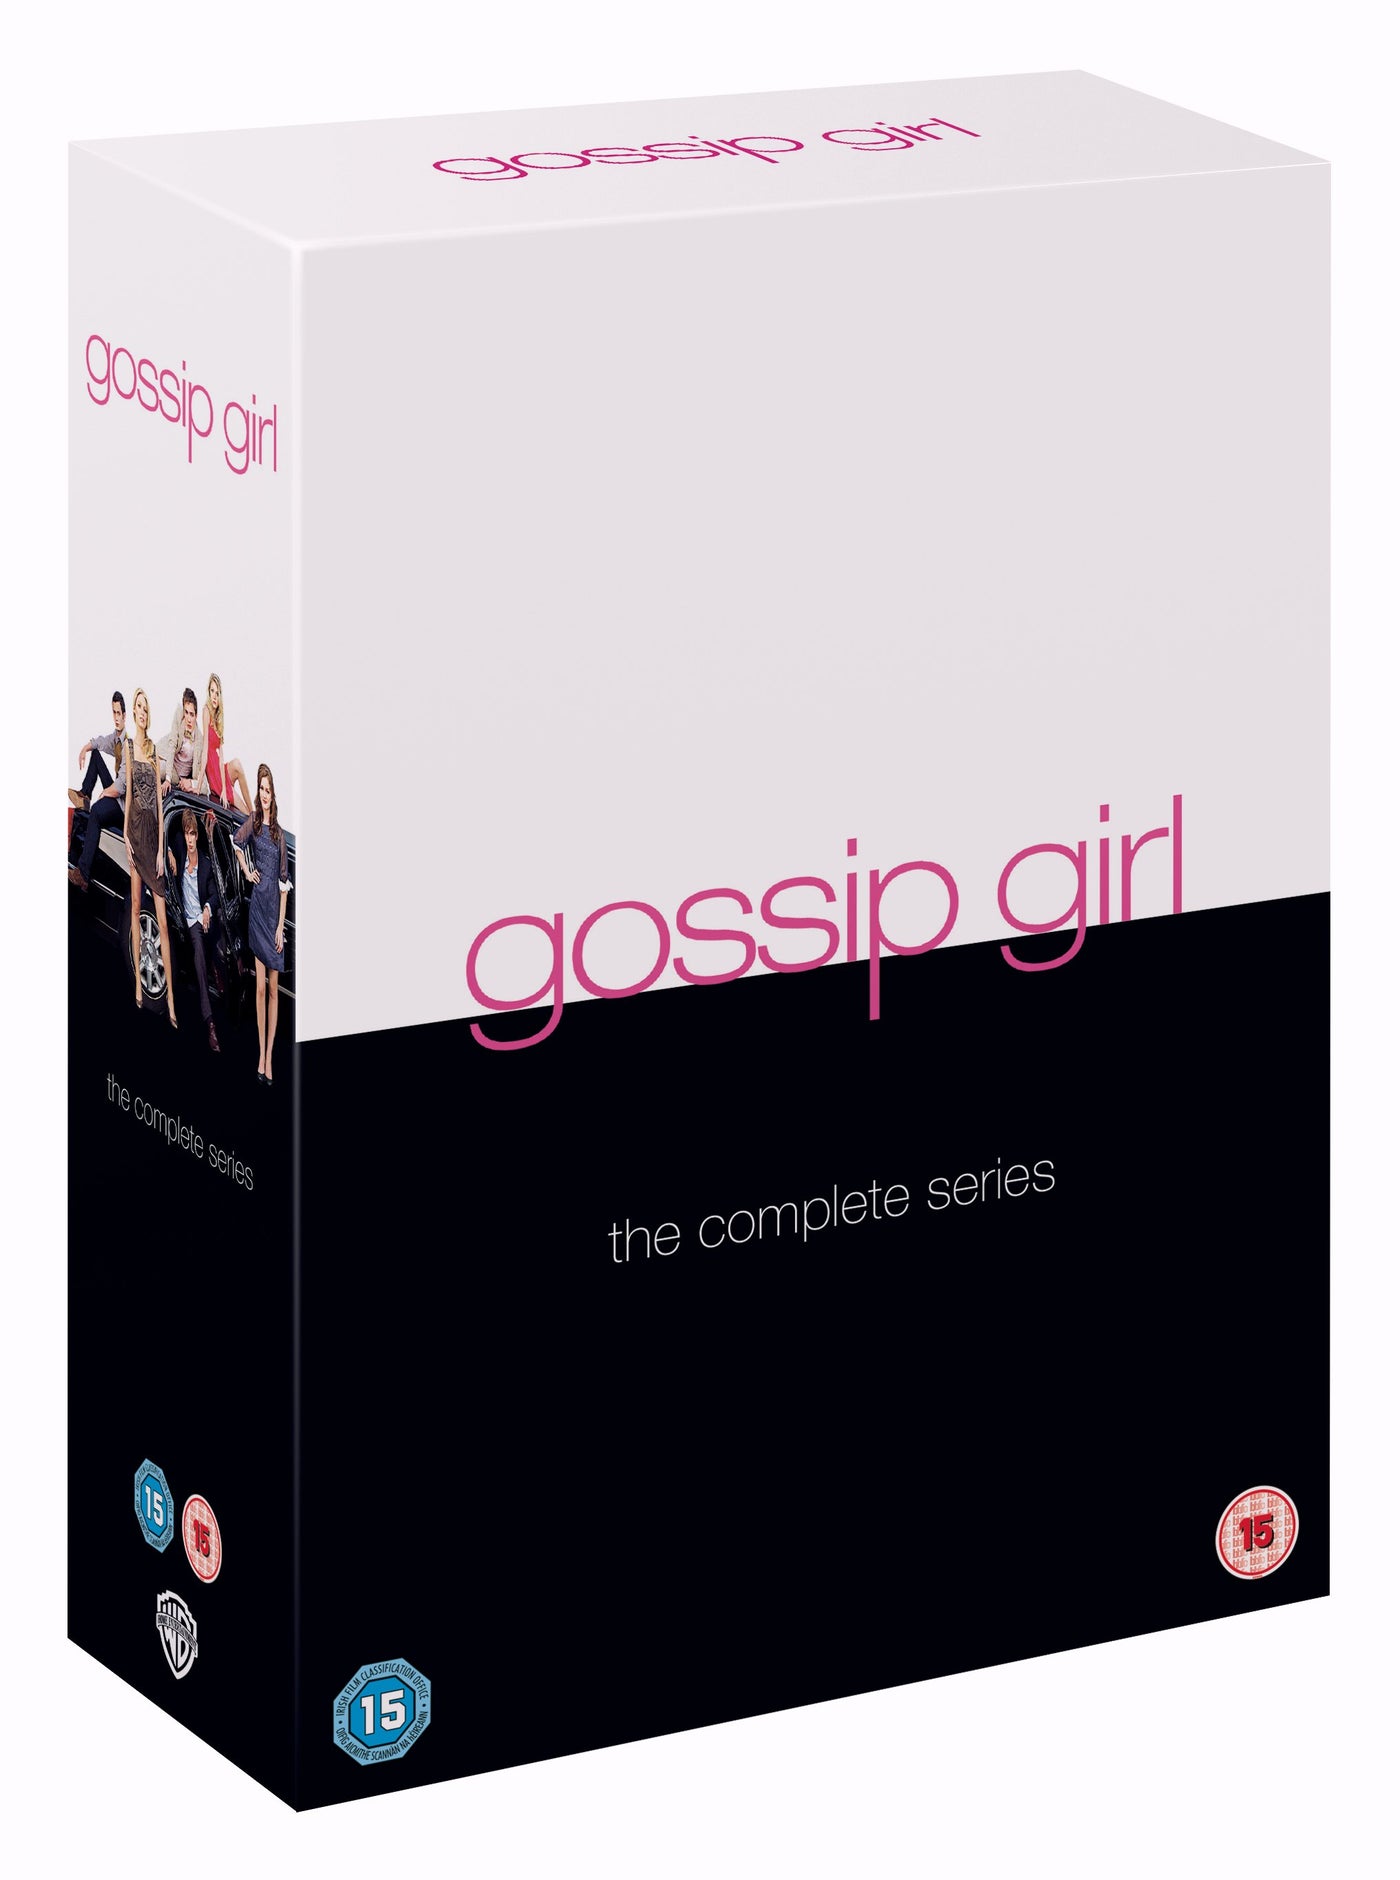 Gossip Girl   The Complete Series  DVD – Warner Bros. Shop   UK